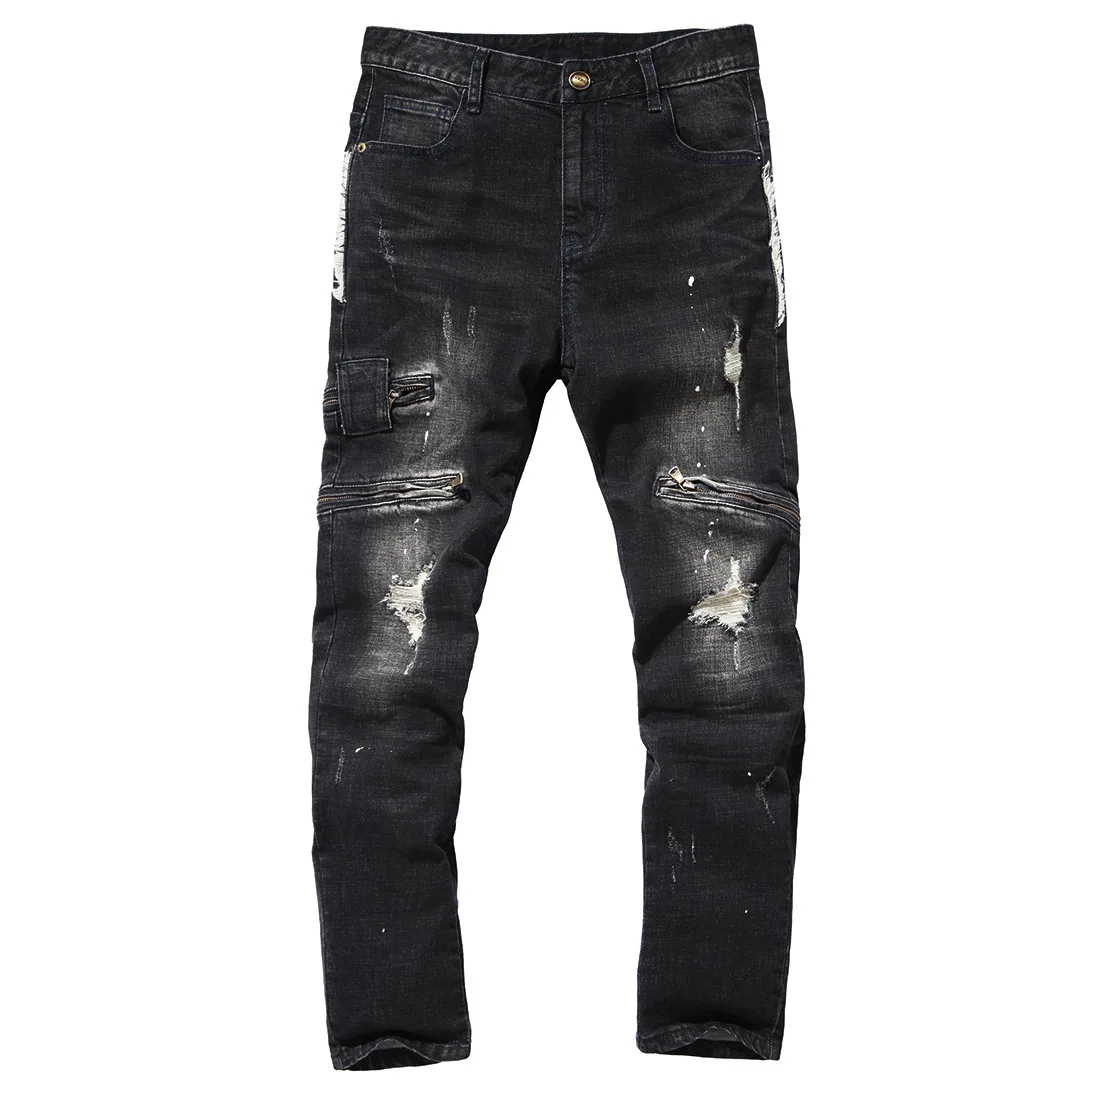 Джинсы высокого качества Для мужчин 2017, Новая мода отверстия Джинсовые штаны хип-хоп Тощий рок Рваные джинсы Homme повседневные брюки из